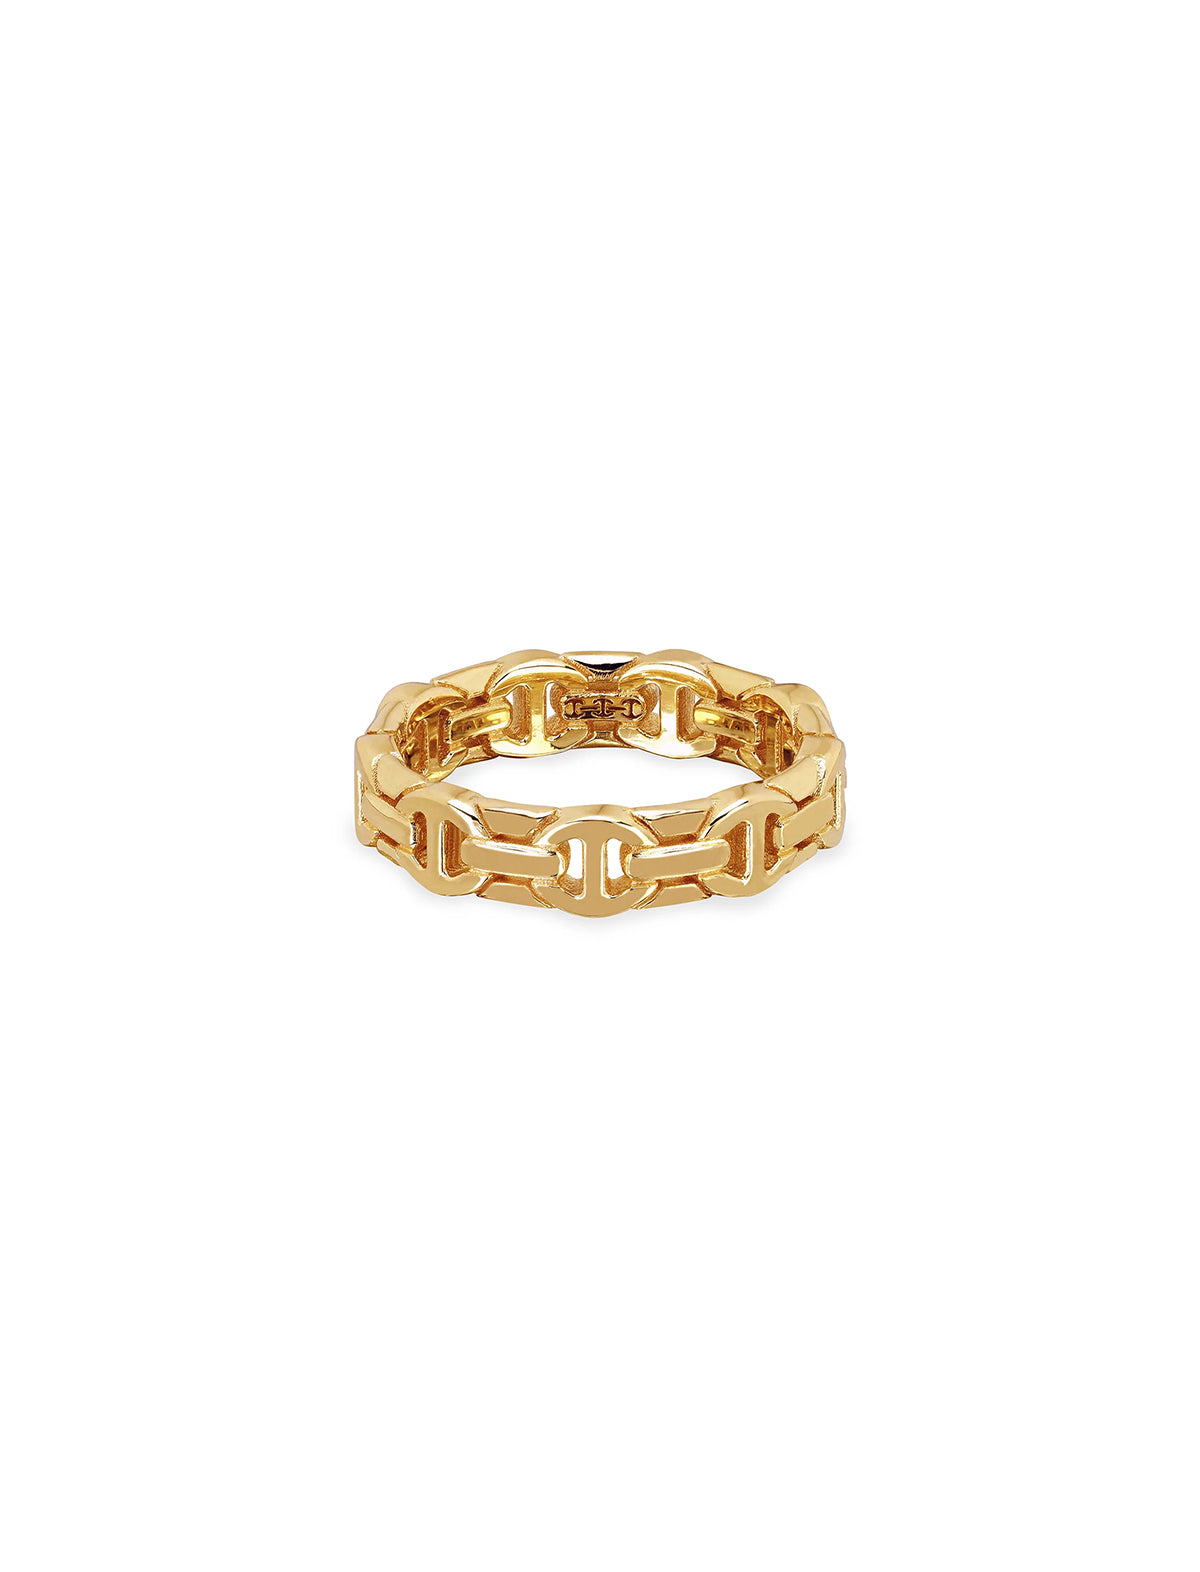 HOORSENBUHS Wall Dame Ring 18k Yellow Gold